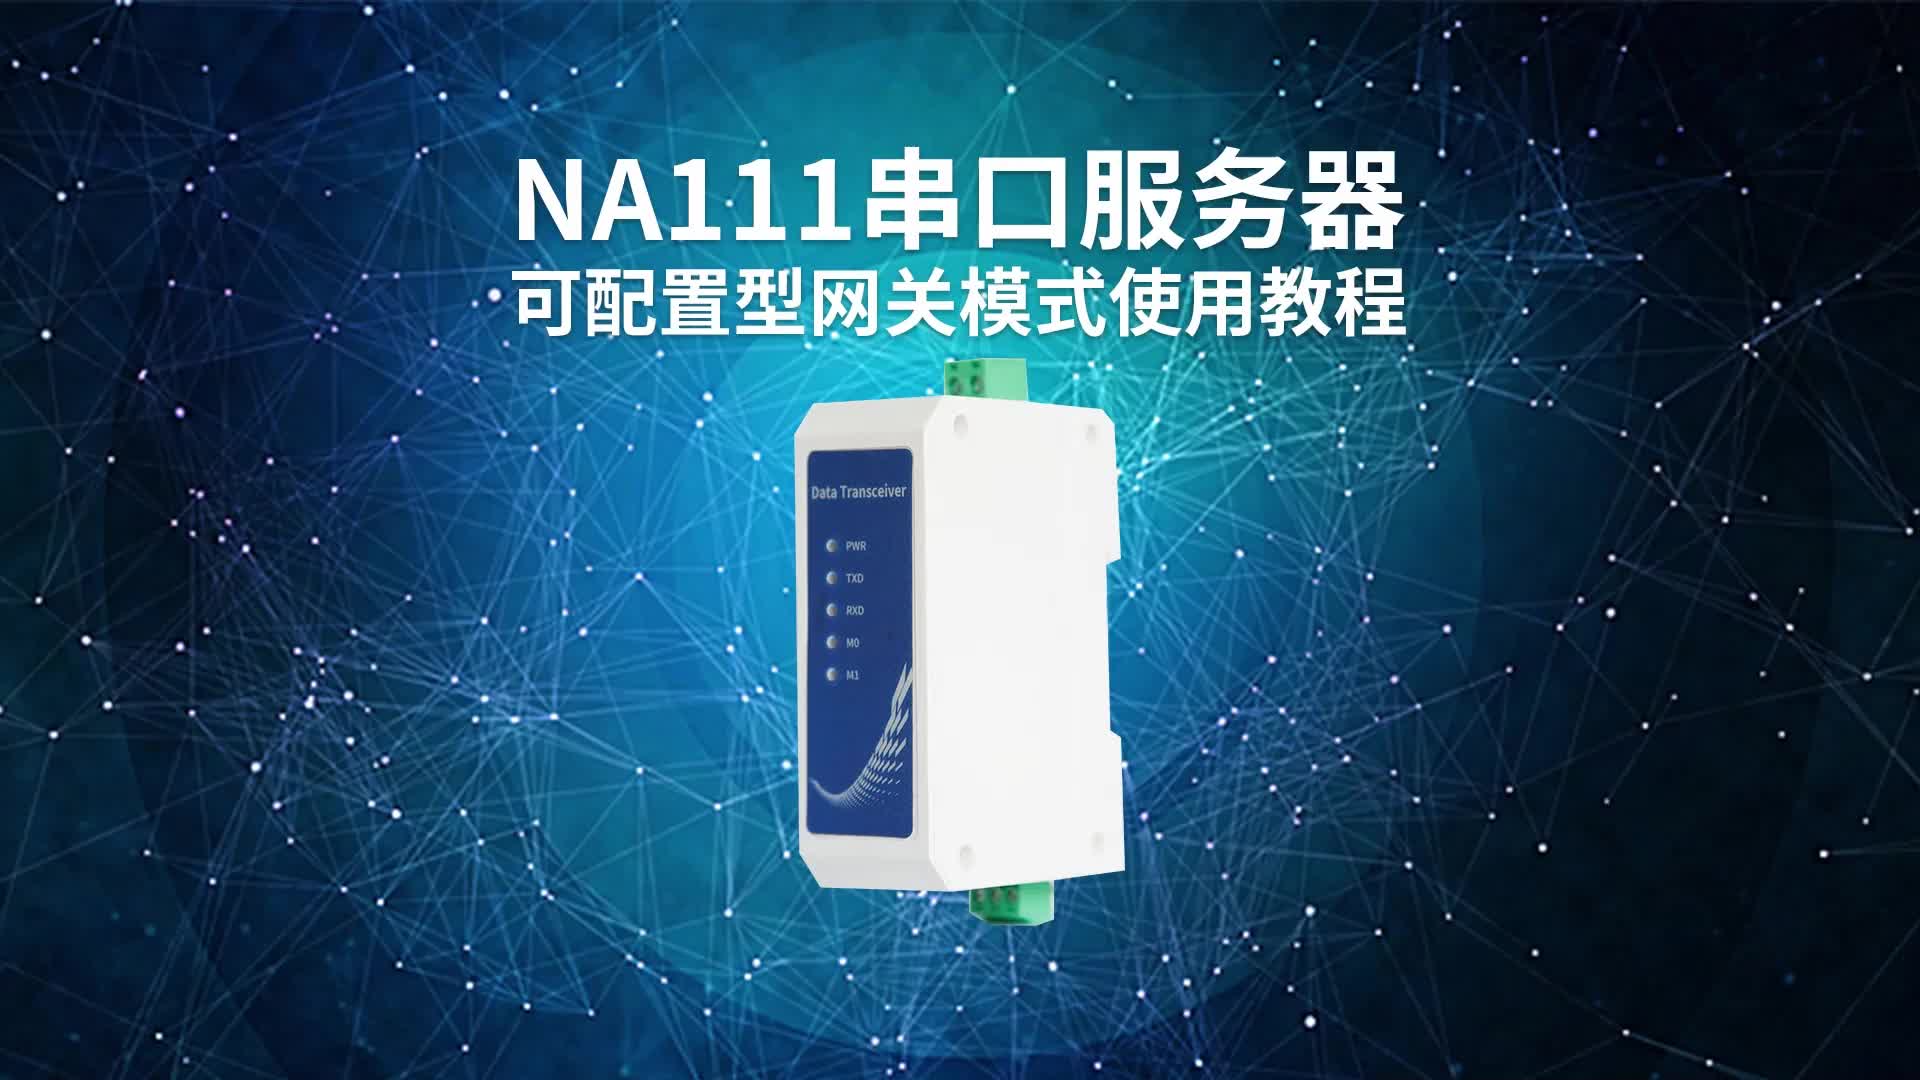 【教程】NA111串口服务器可配置型网关使用教程#串口服务器 